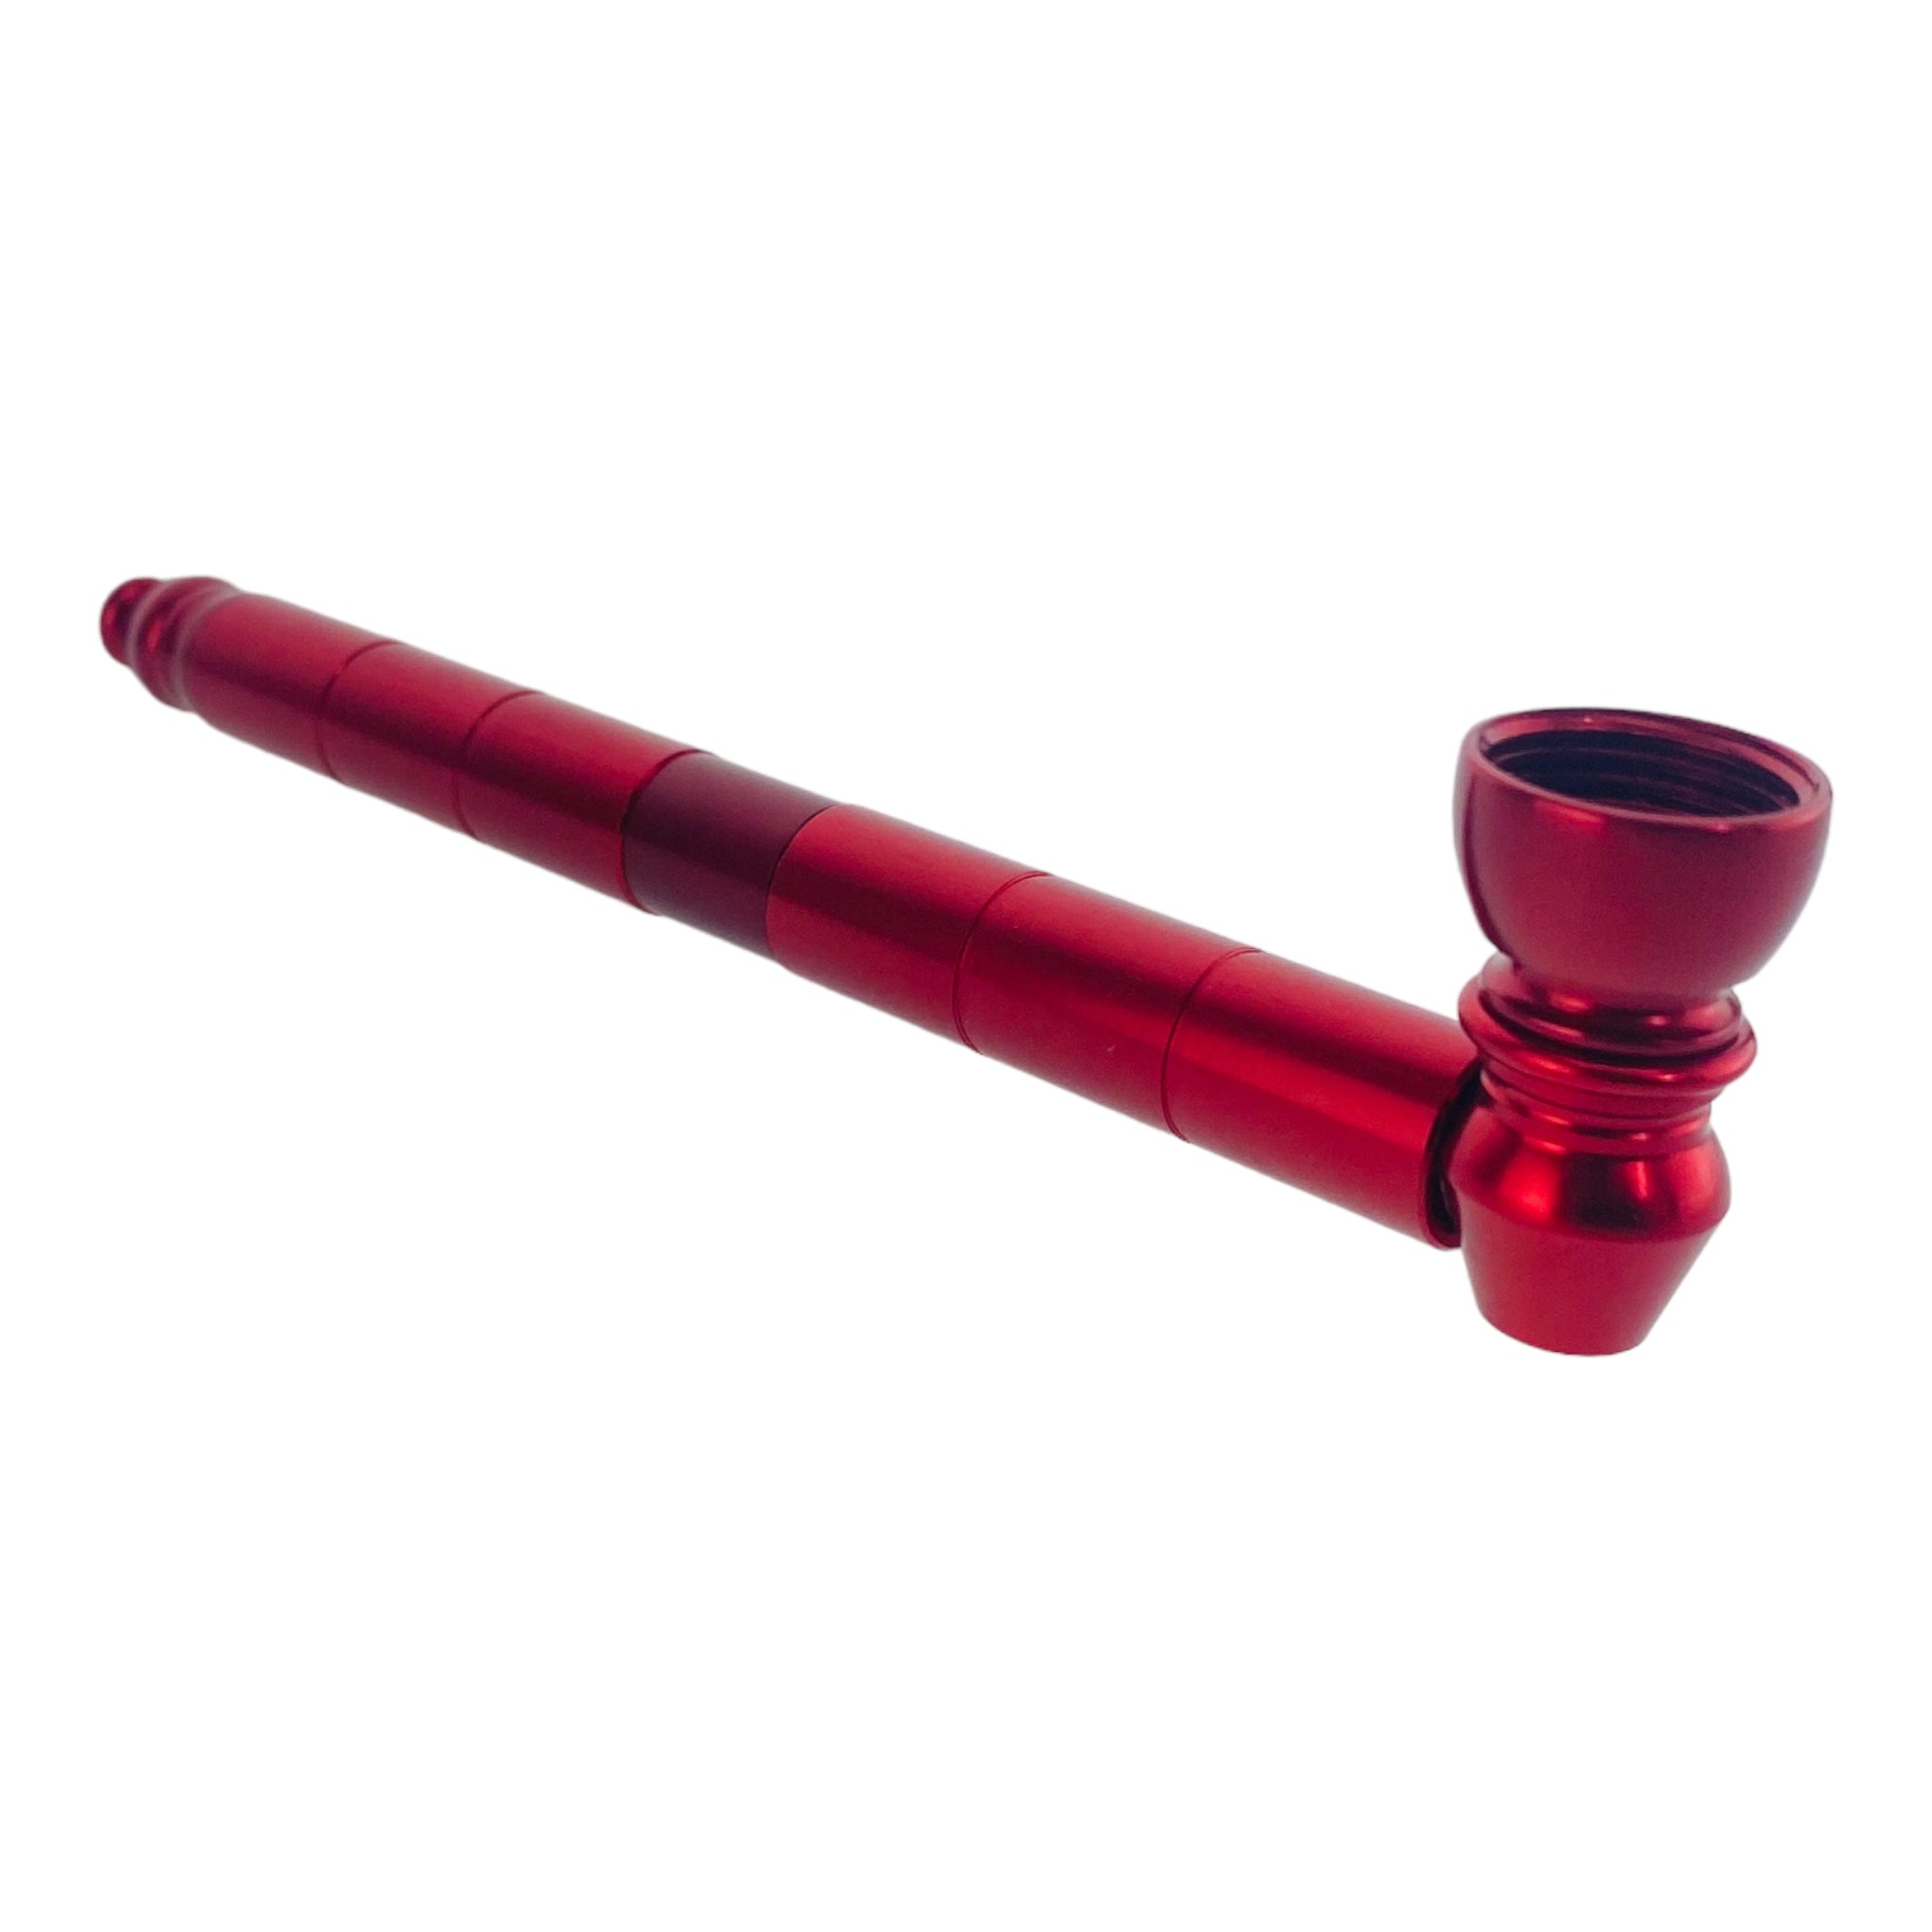 6 inch long Metal Hand Pipes - Red Long Stem Aluminum Metal Pipe